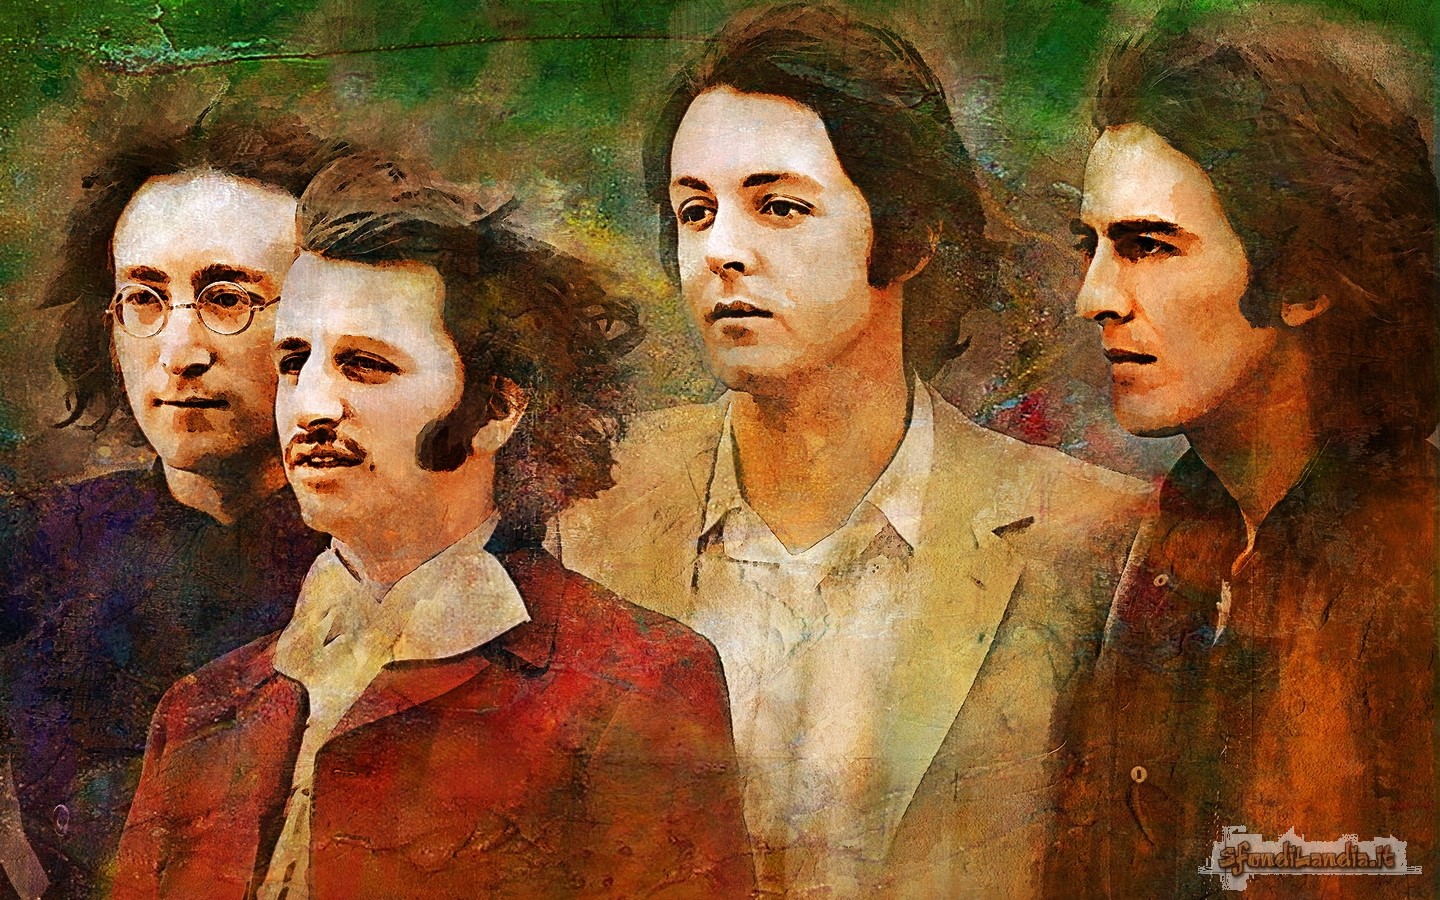 The Beatles Portrait